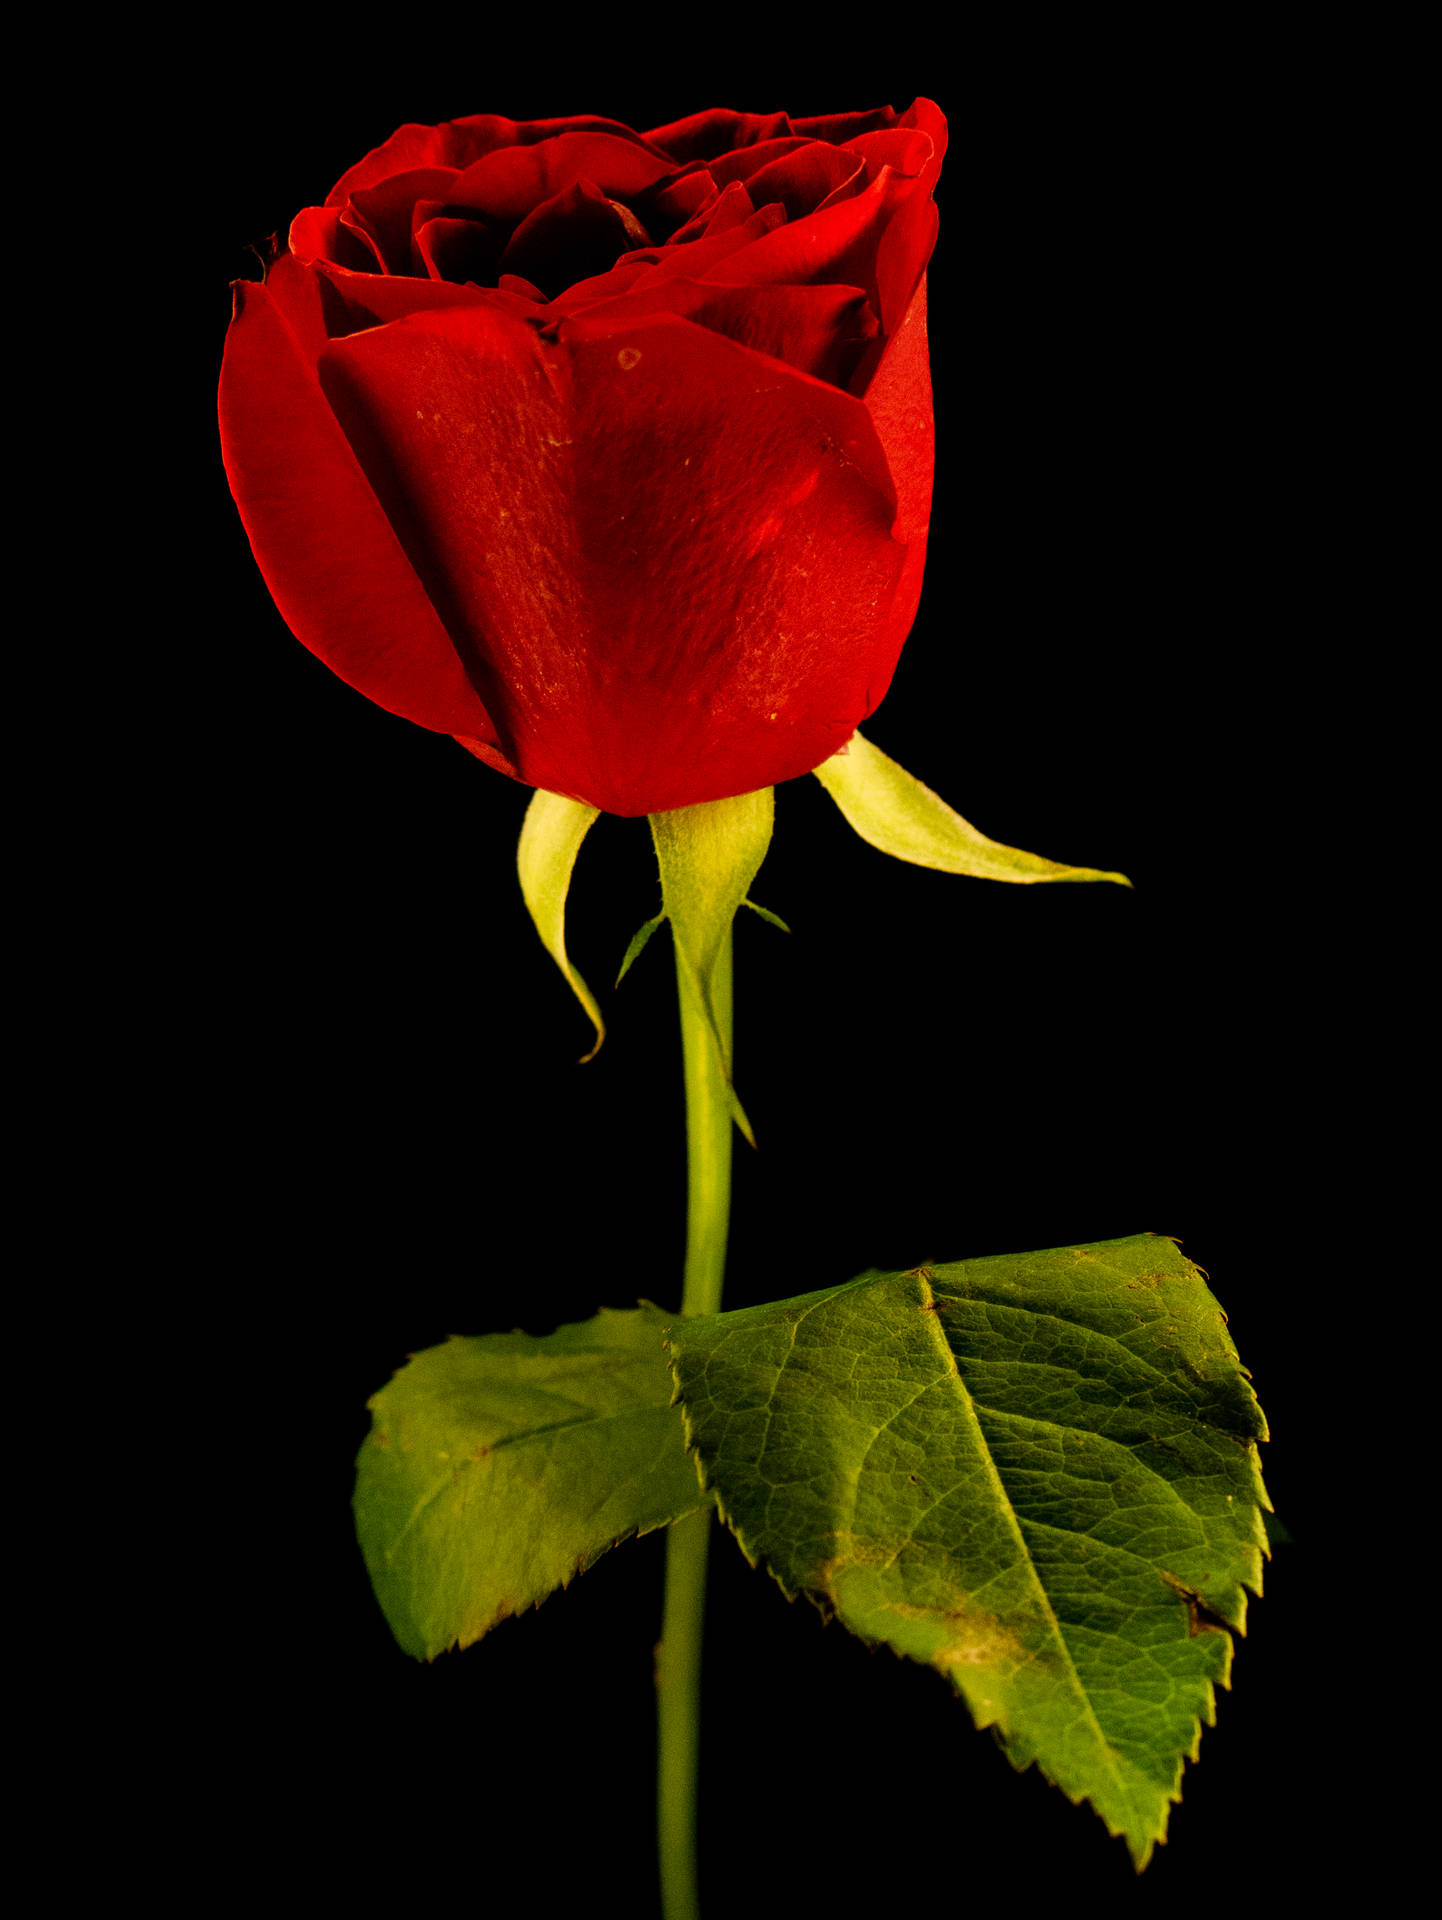 Eineeinzelne Rote Rose In Hd Wallpaper